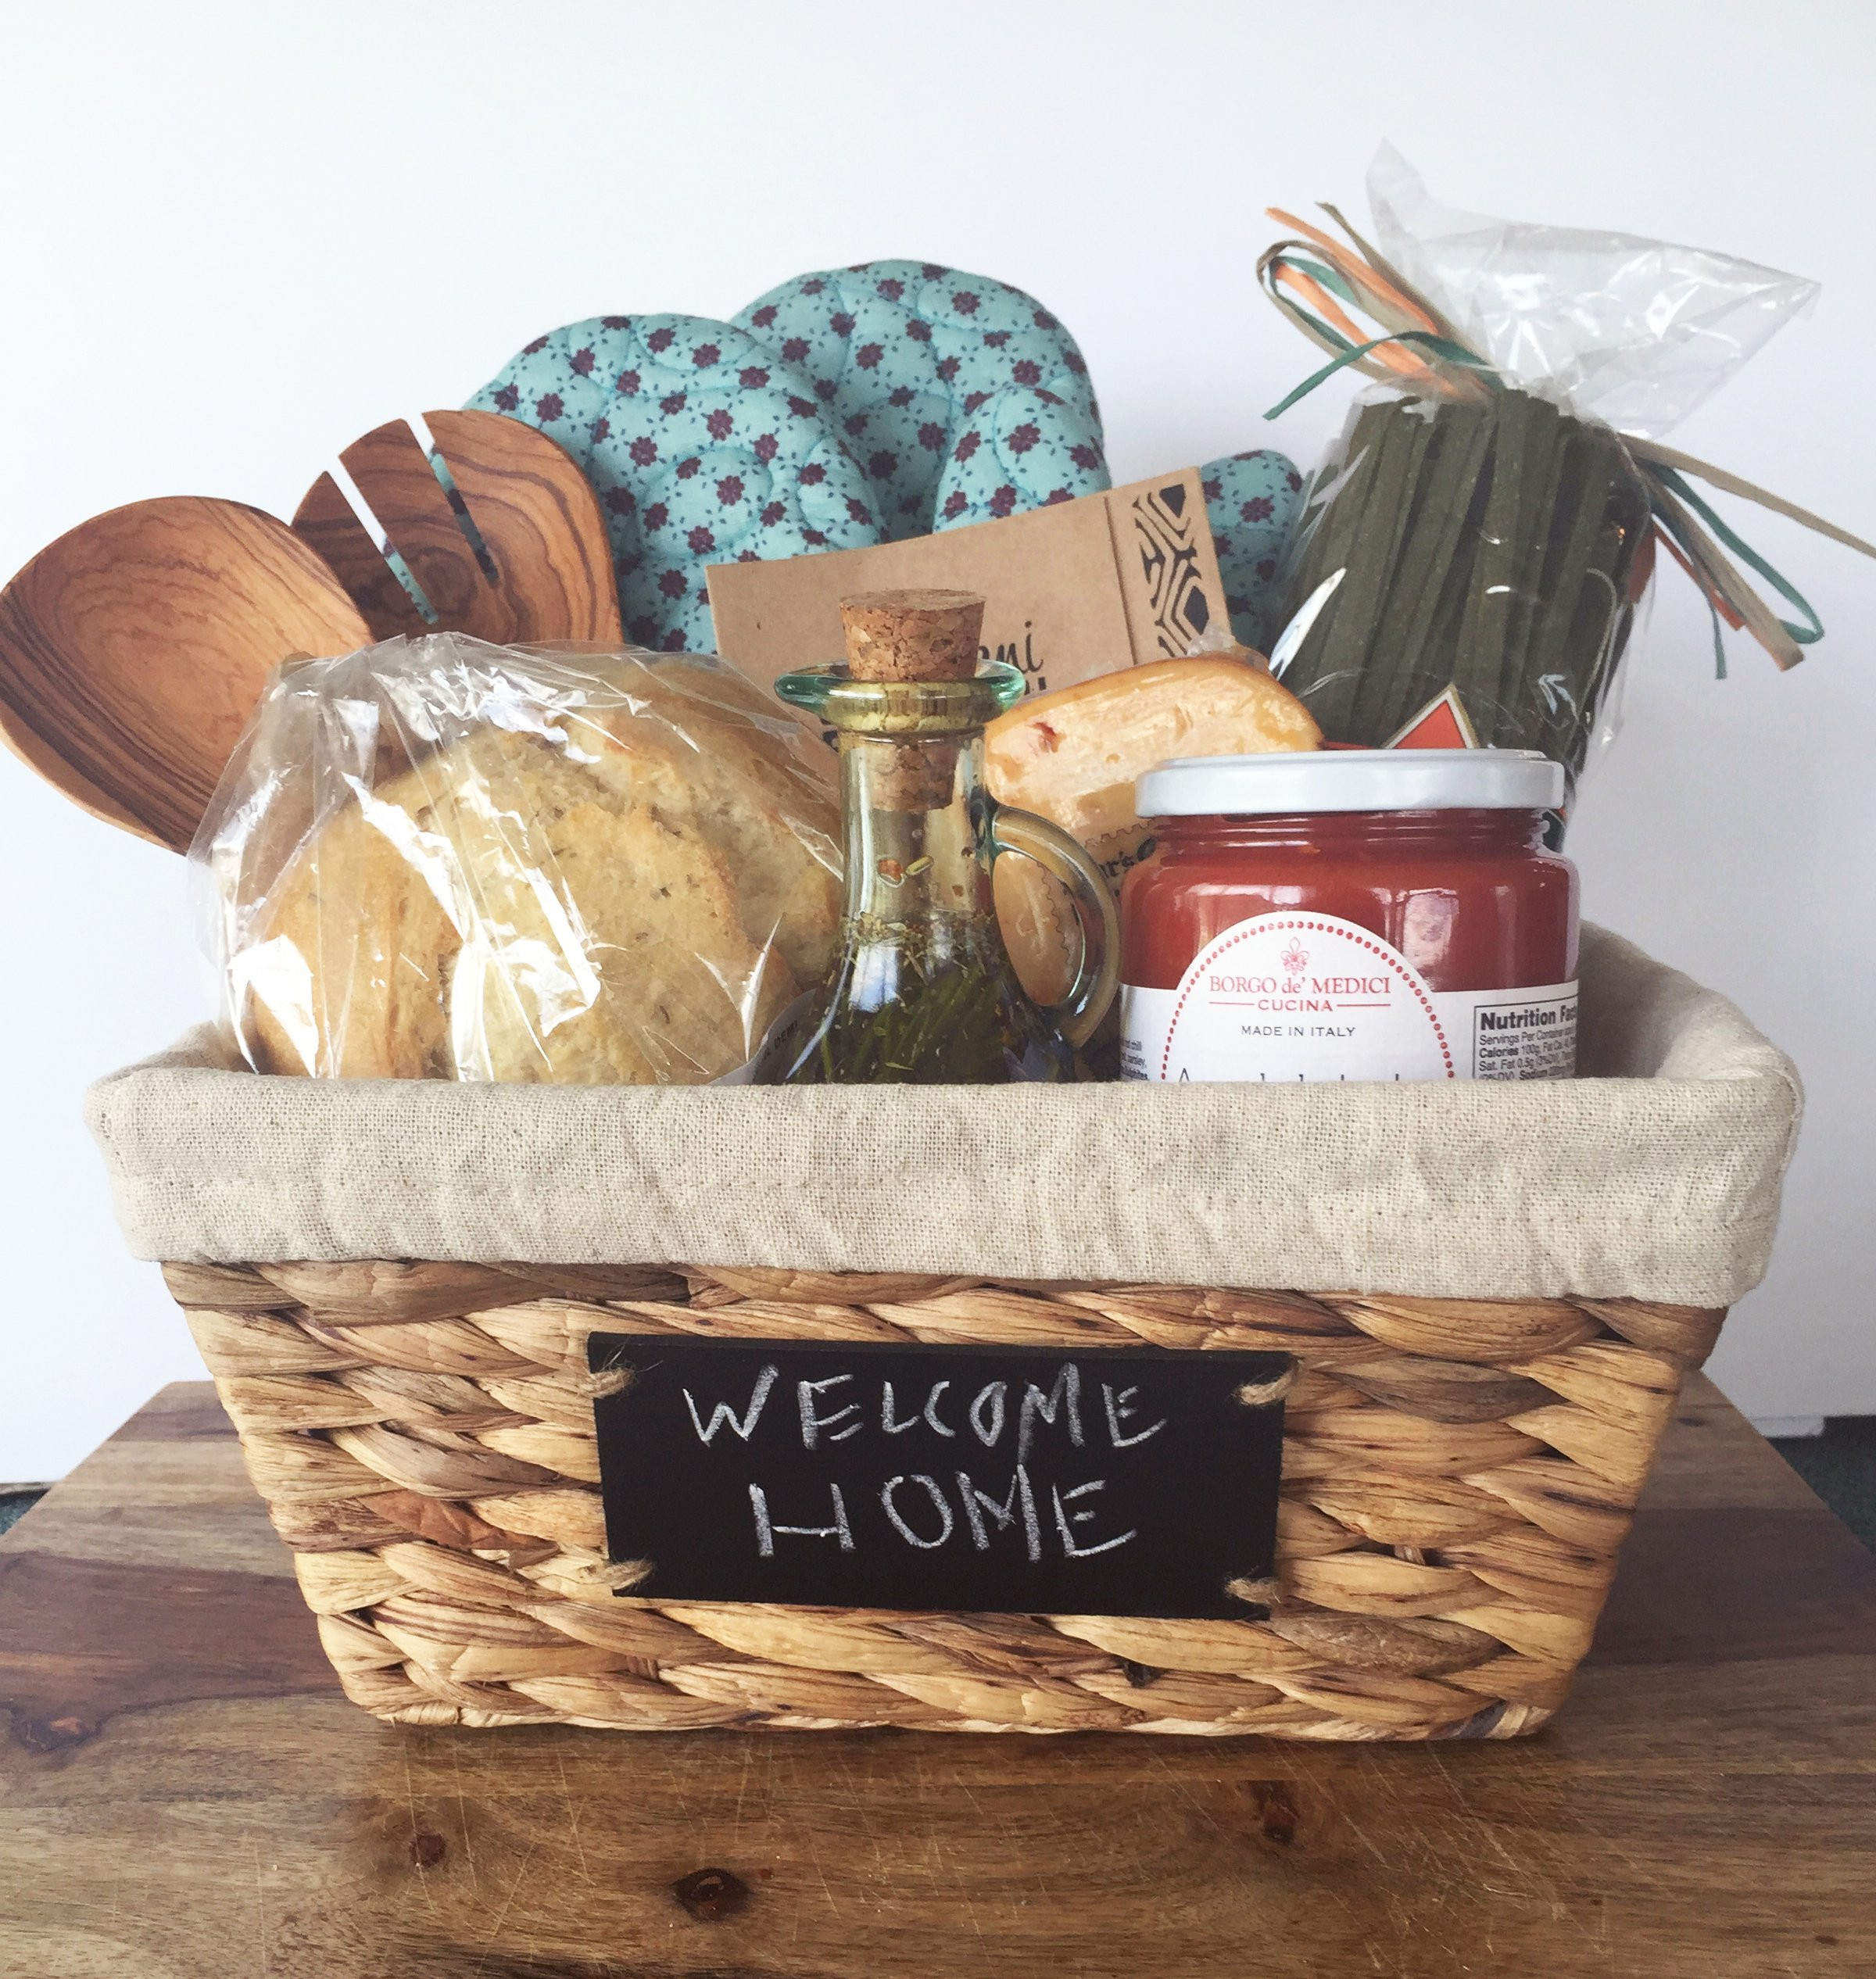 New Home Gift Basket Ideas
 DIY HOUSEWARMING GIFT BASKET T A S T Y S O U T H E R N